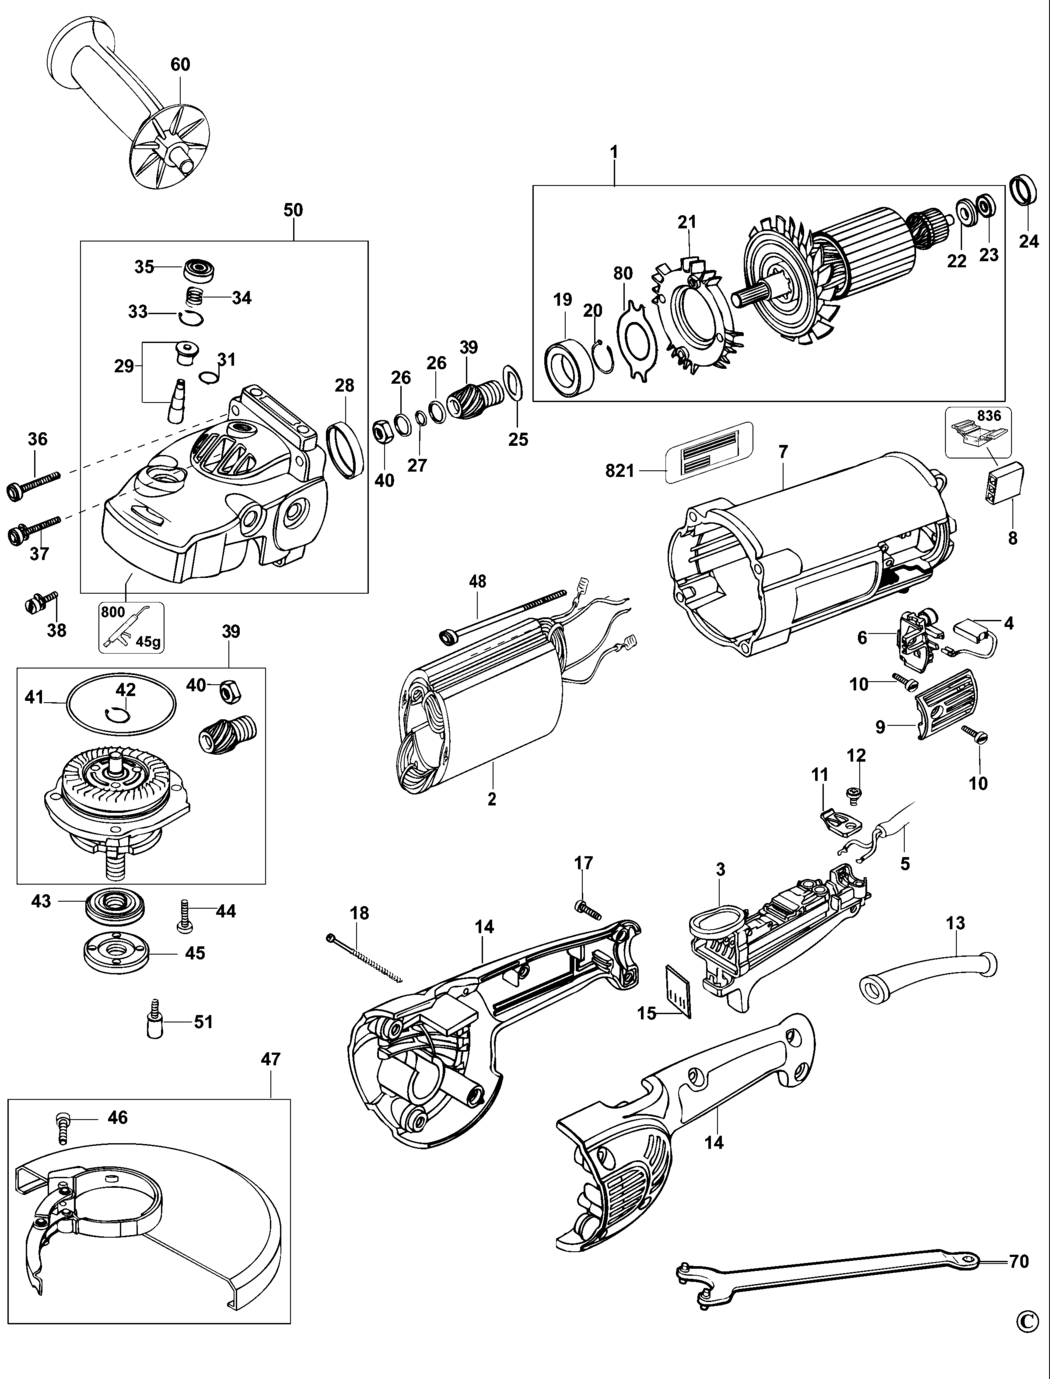 Dewalt D28411-LX Type 4 Angle Grinder Spare Parts